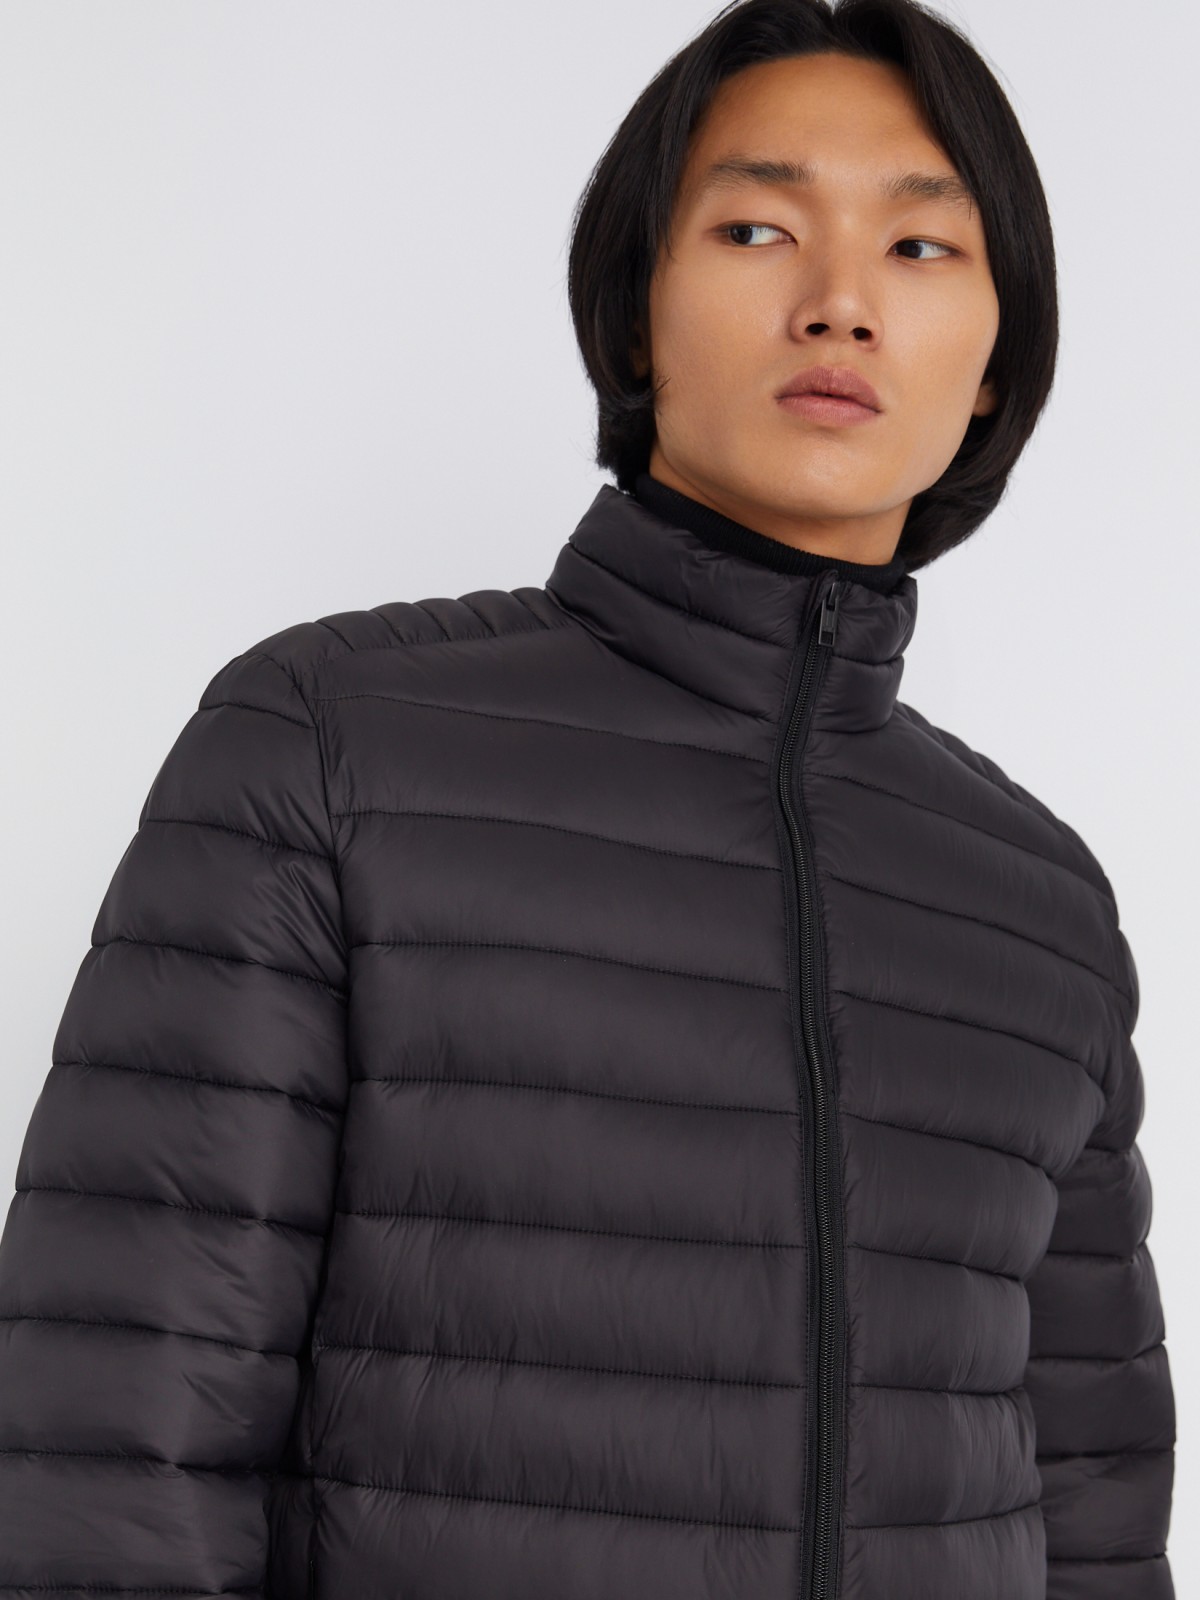 Лёгкая утеплённая стёганая куртка на молнии с воротником-стойкой zolla 013335102064, цвет черный, размер S - фото 4